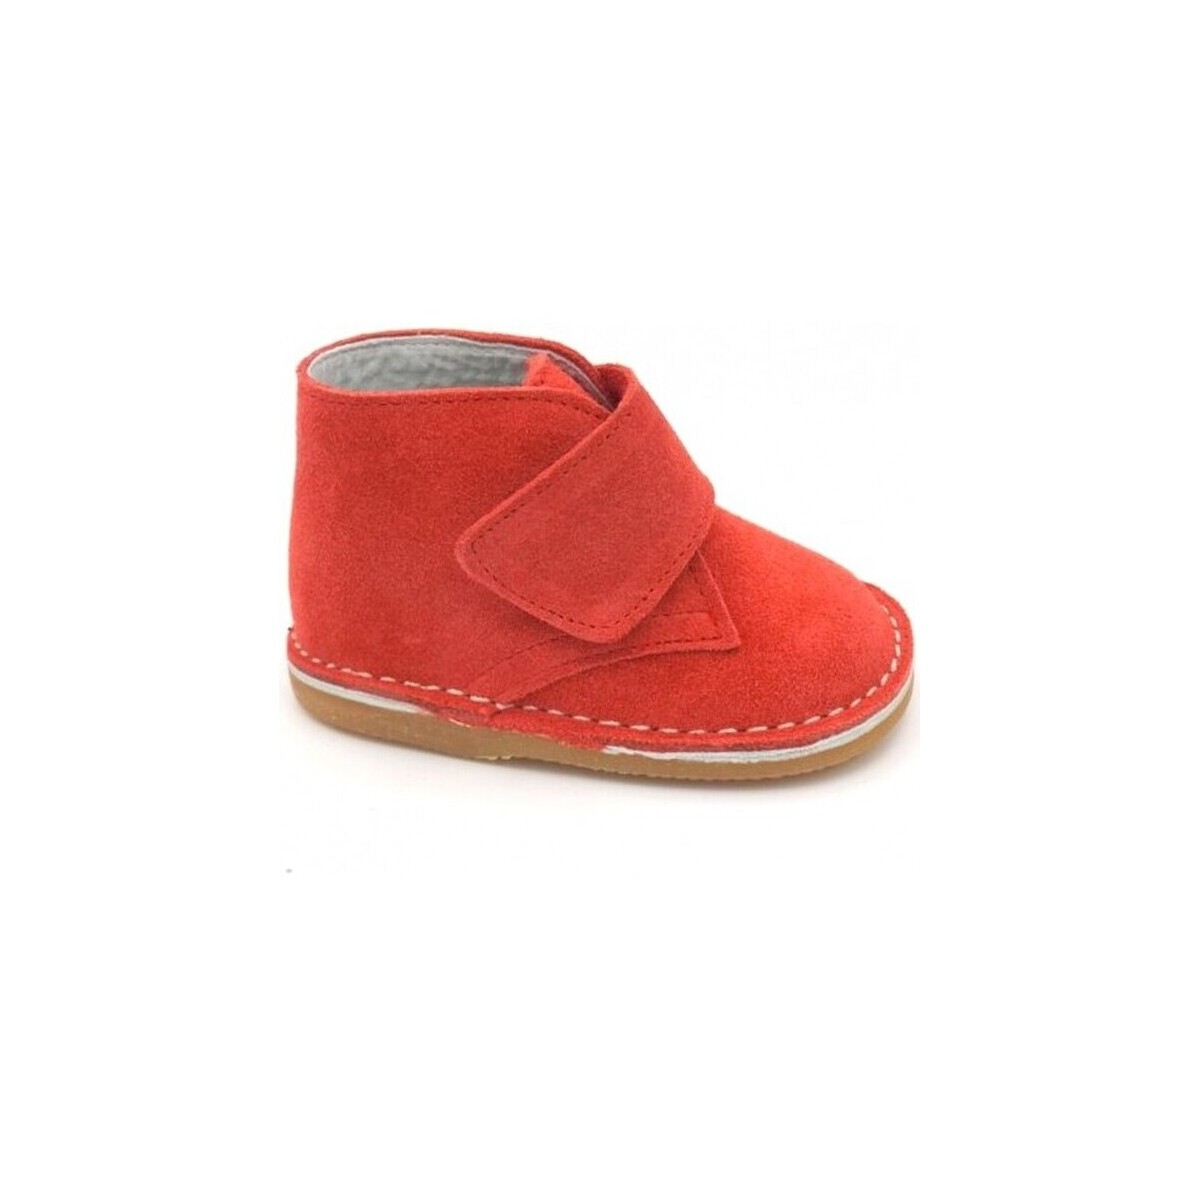 Παπούτσια Μπότες Colores 12251-15 Red